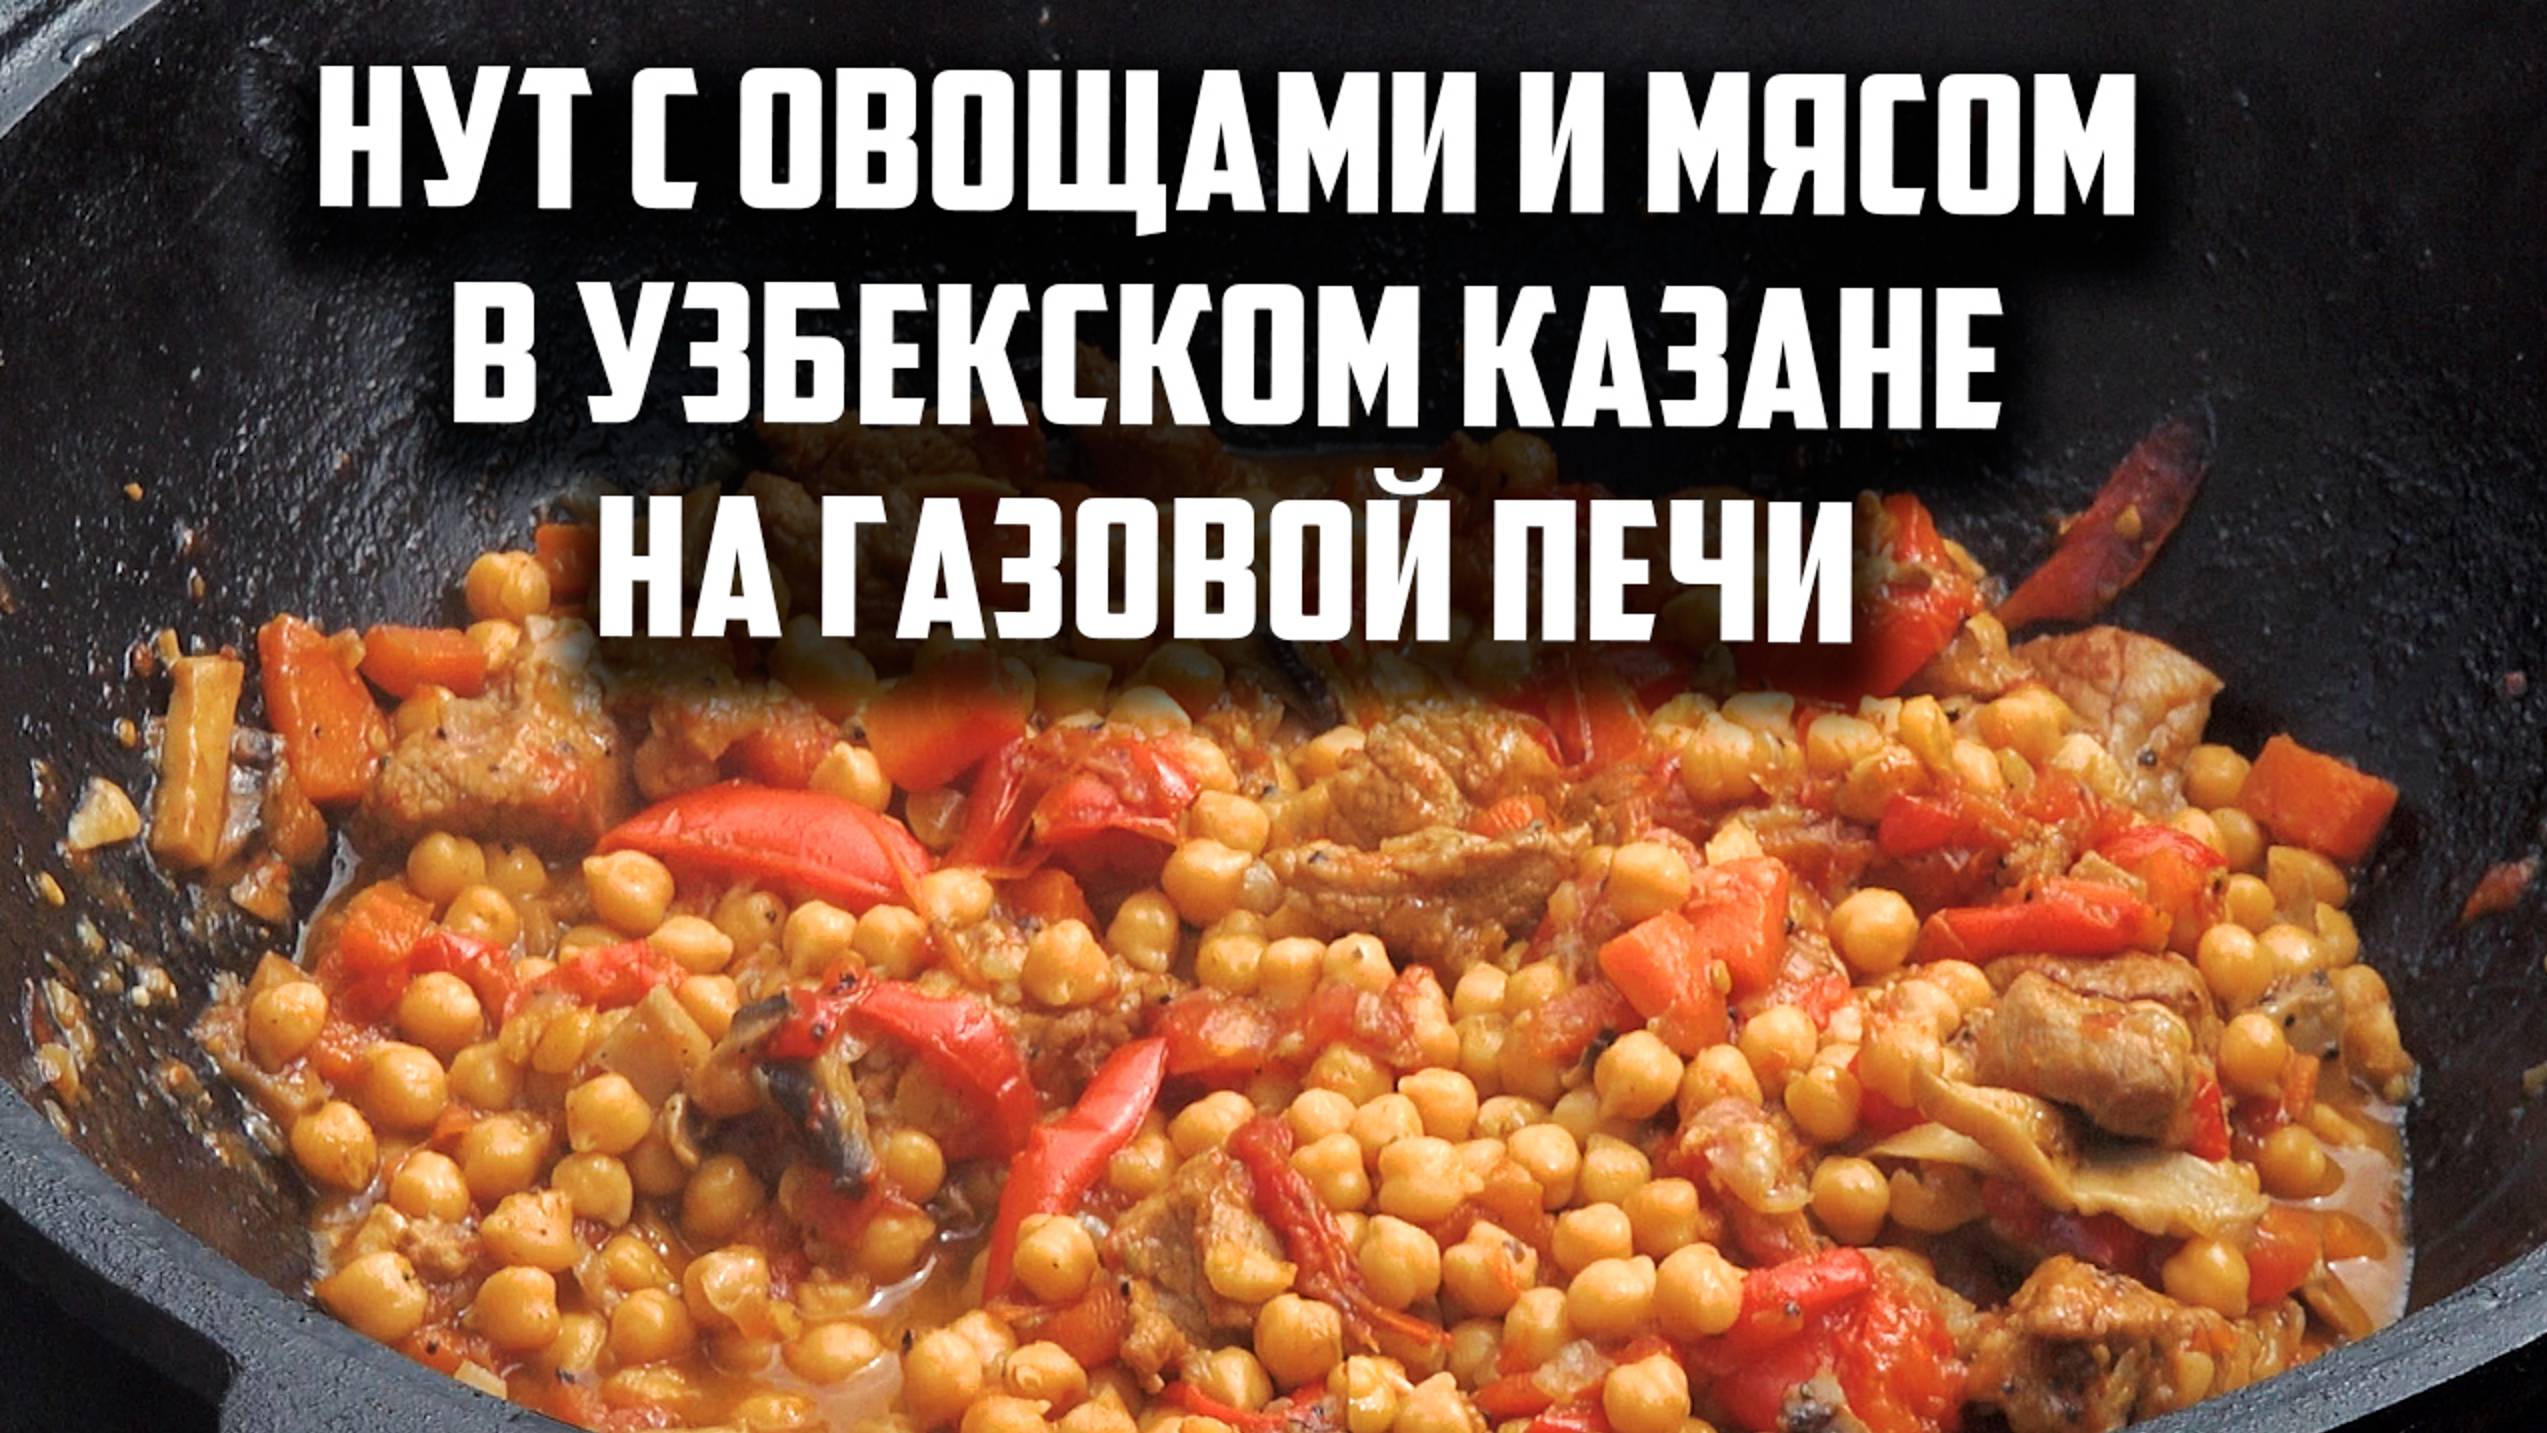 Нут с овощами и мясом в узбекском казане на газовой печи